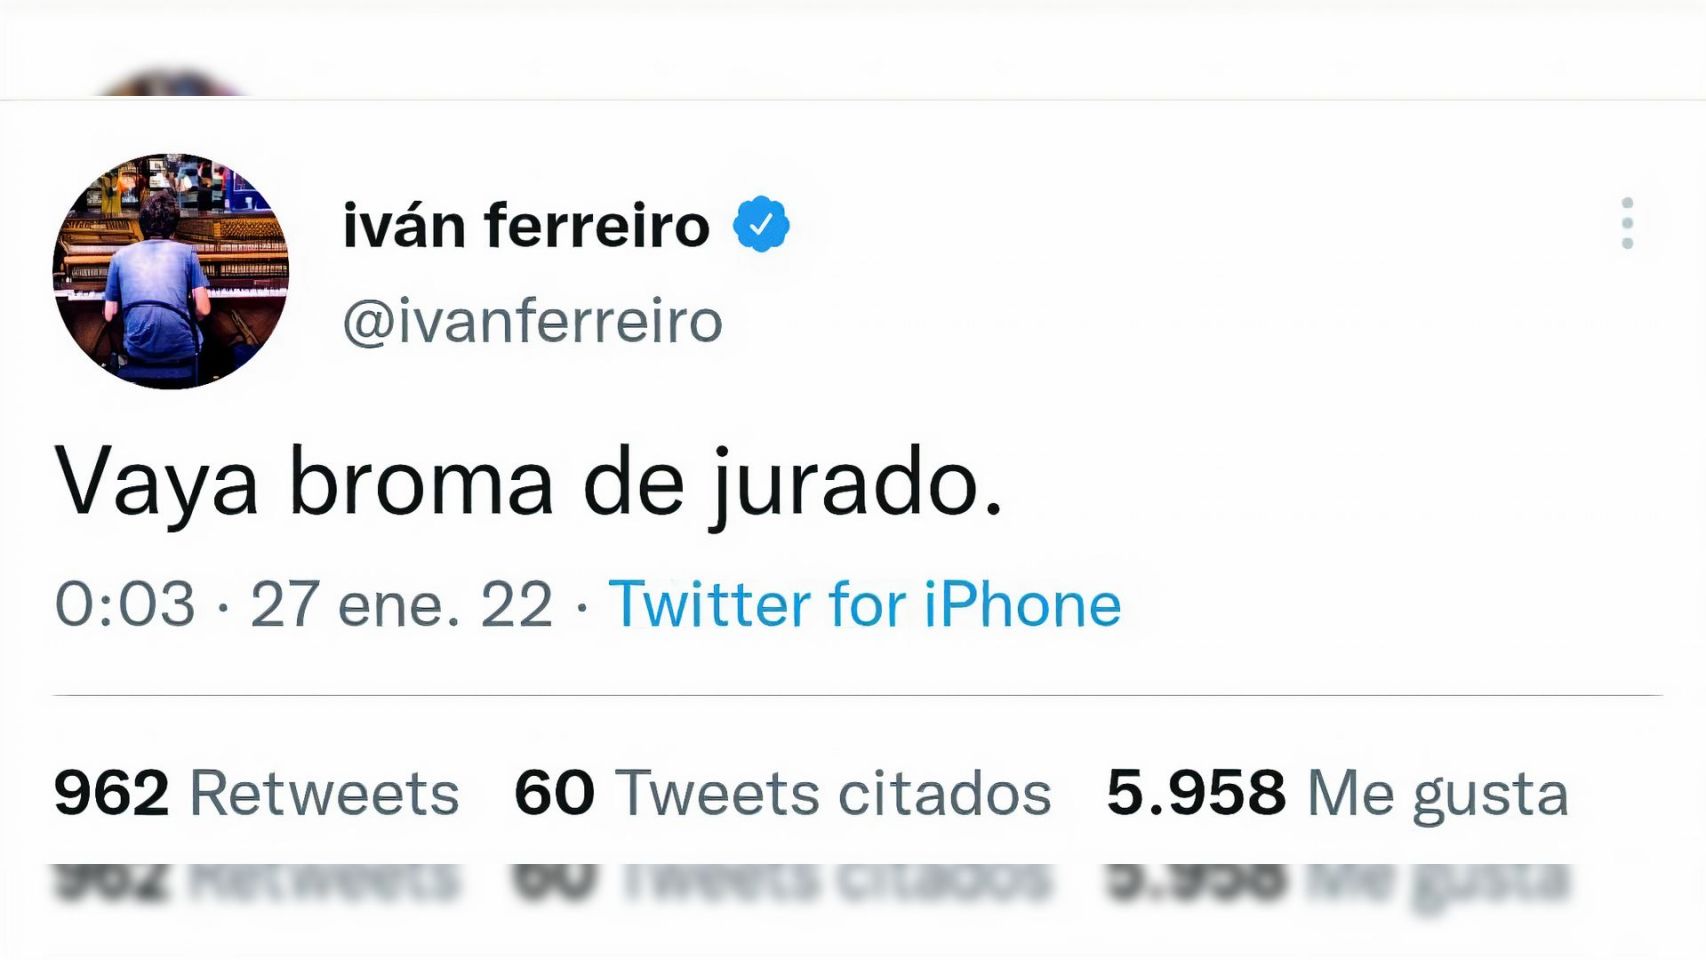 El gallego Iván Ferreiro muestra su indignación contra el jurado en redes.